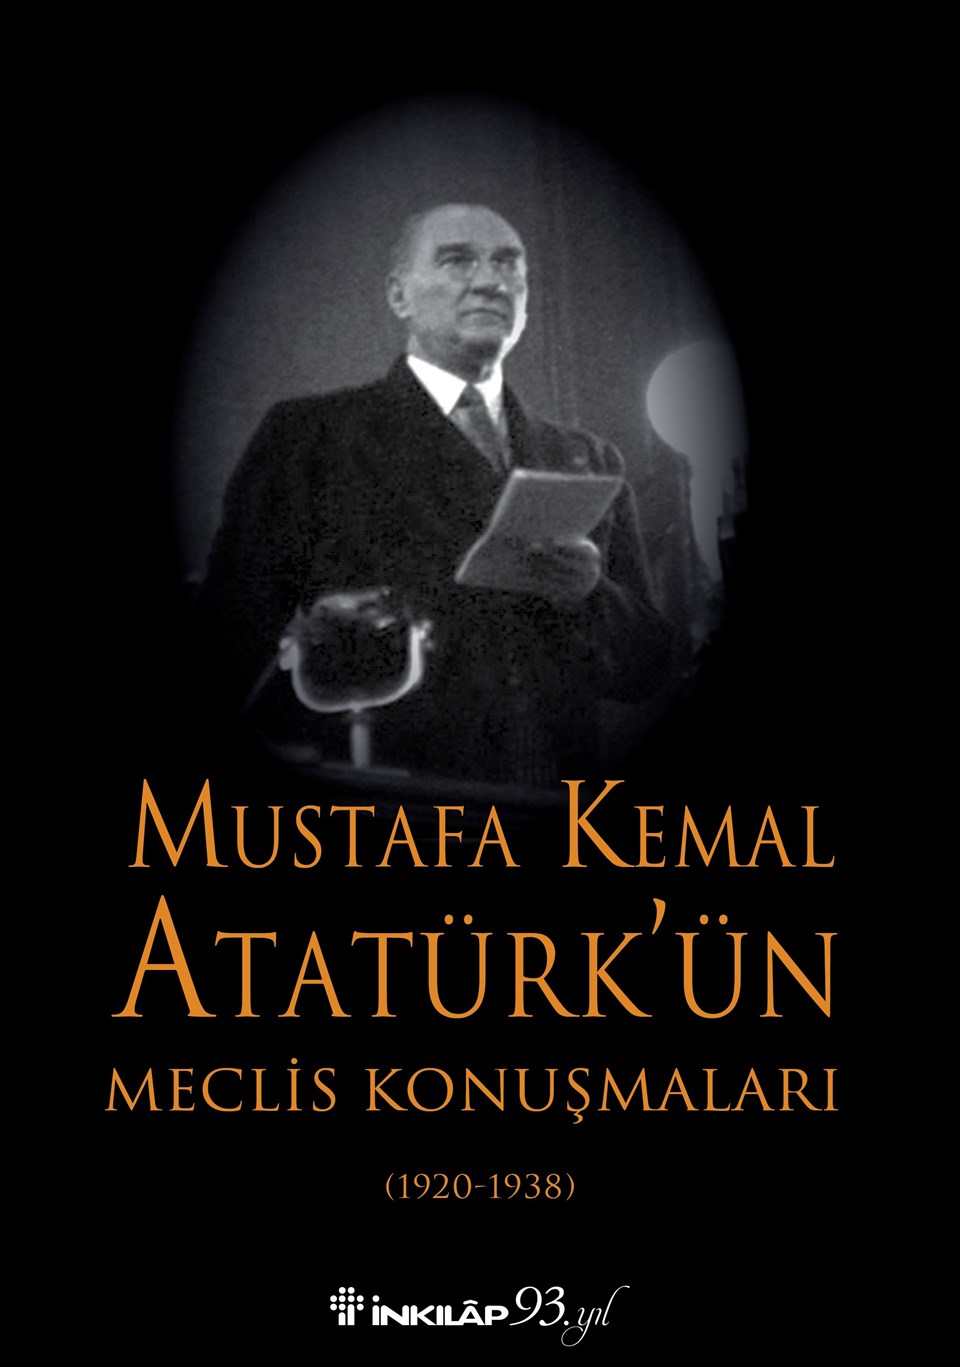 Atatürk'ün salgın ve bulaşıcı hastalıklarla ilgili sözleri 'Mustafa Kemal Atatürk’ün Mecli̇s Konuşmaları' adlı kitapta - 1